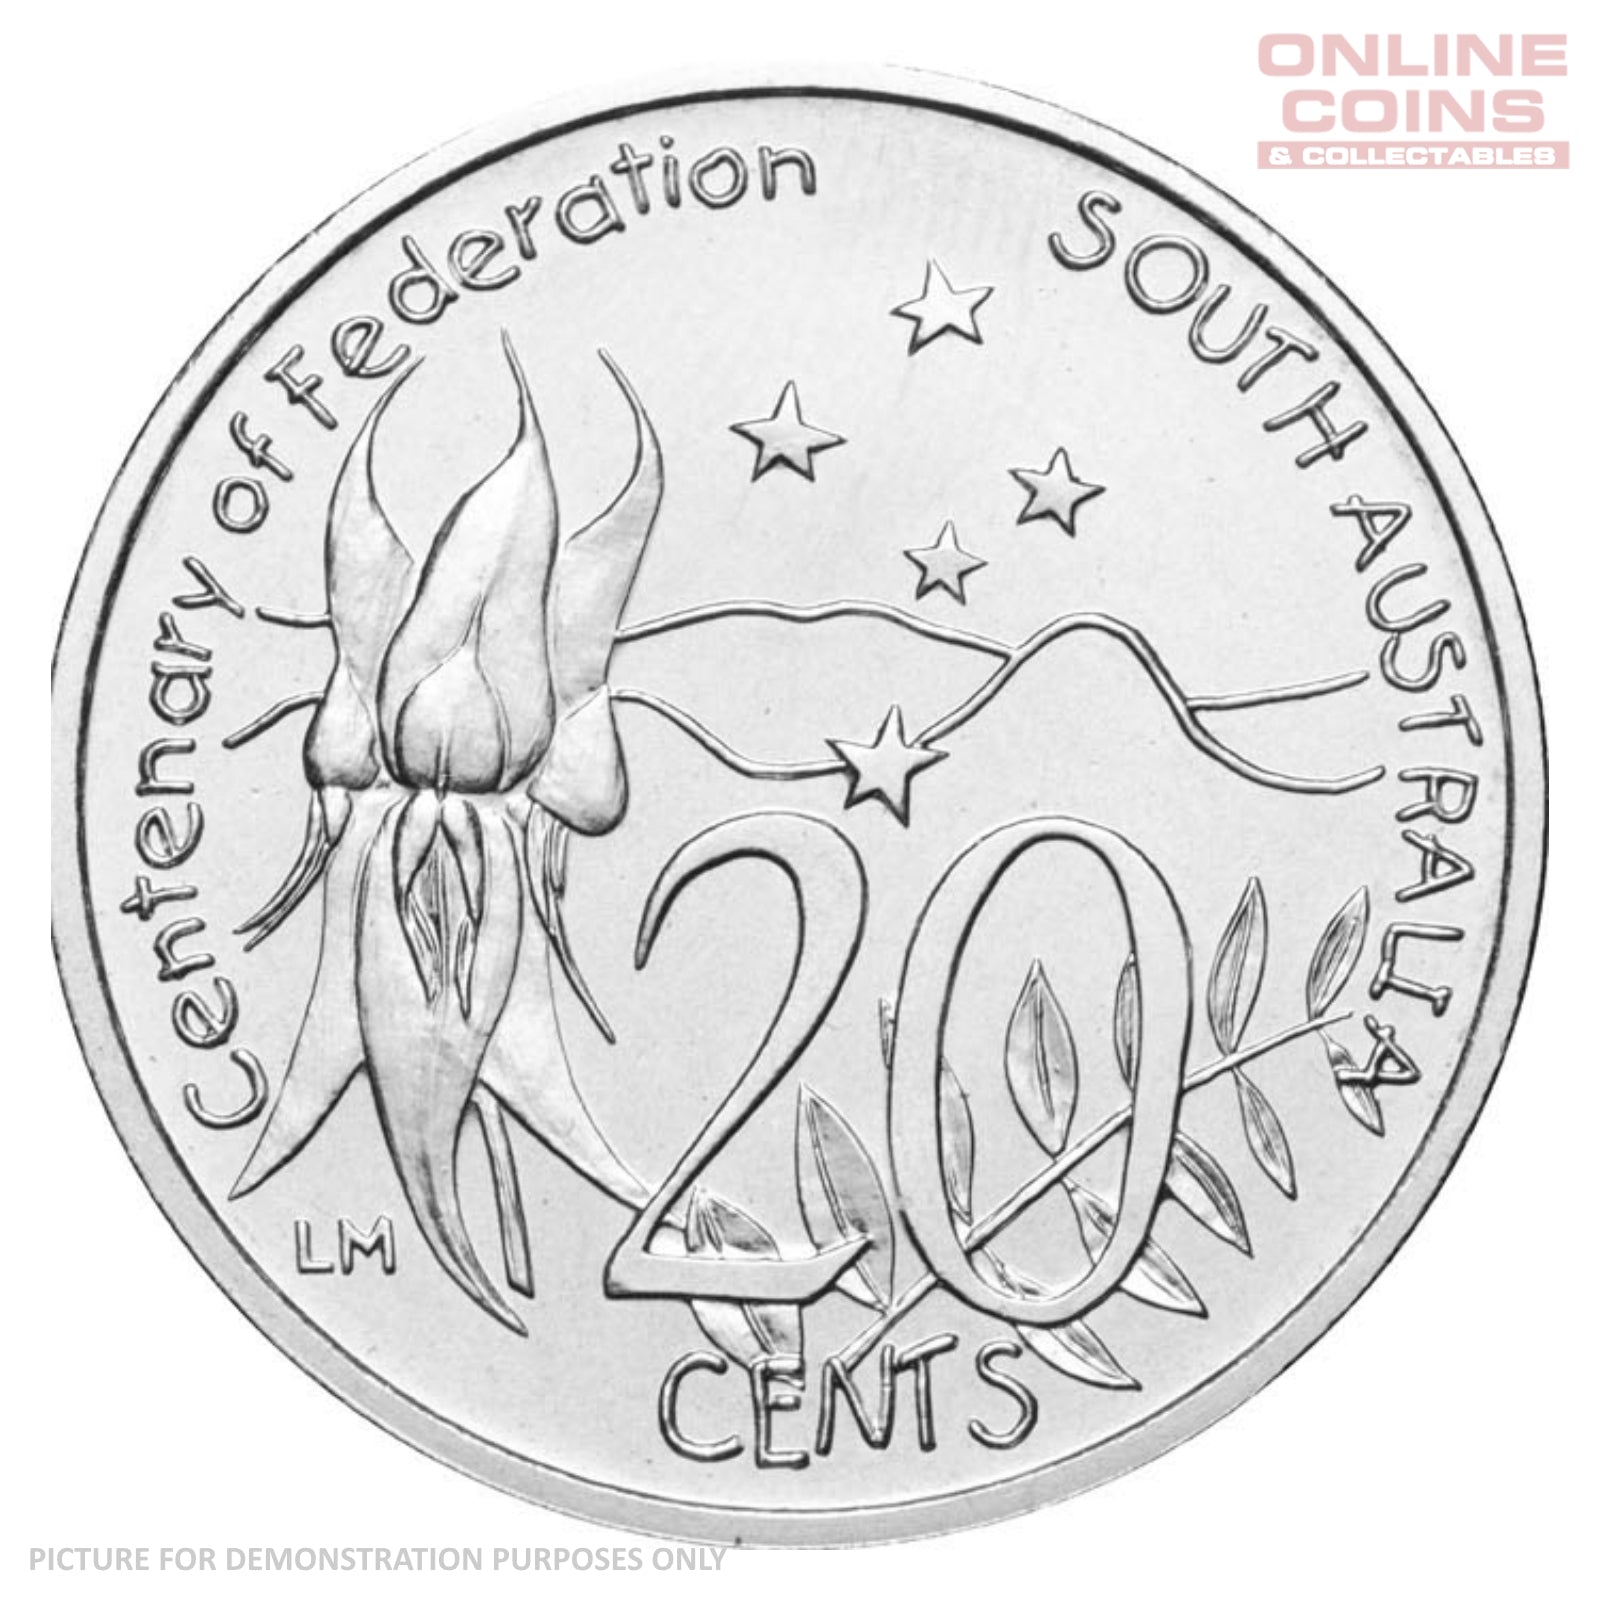 2001 RAM Centenary of Federation 20c Circulating Coin - SOUTH AUSTRALIA